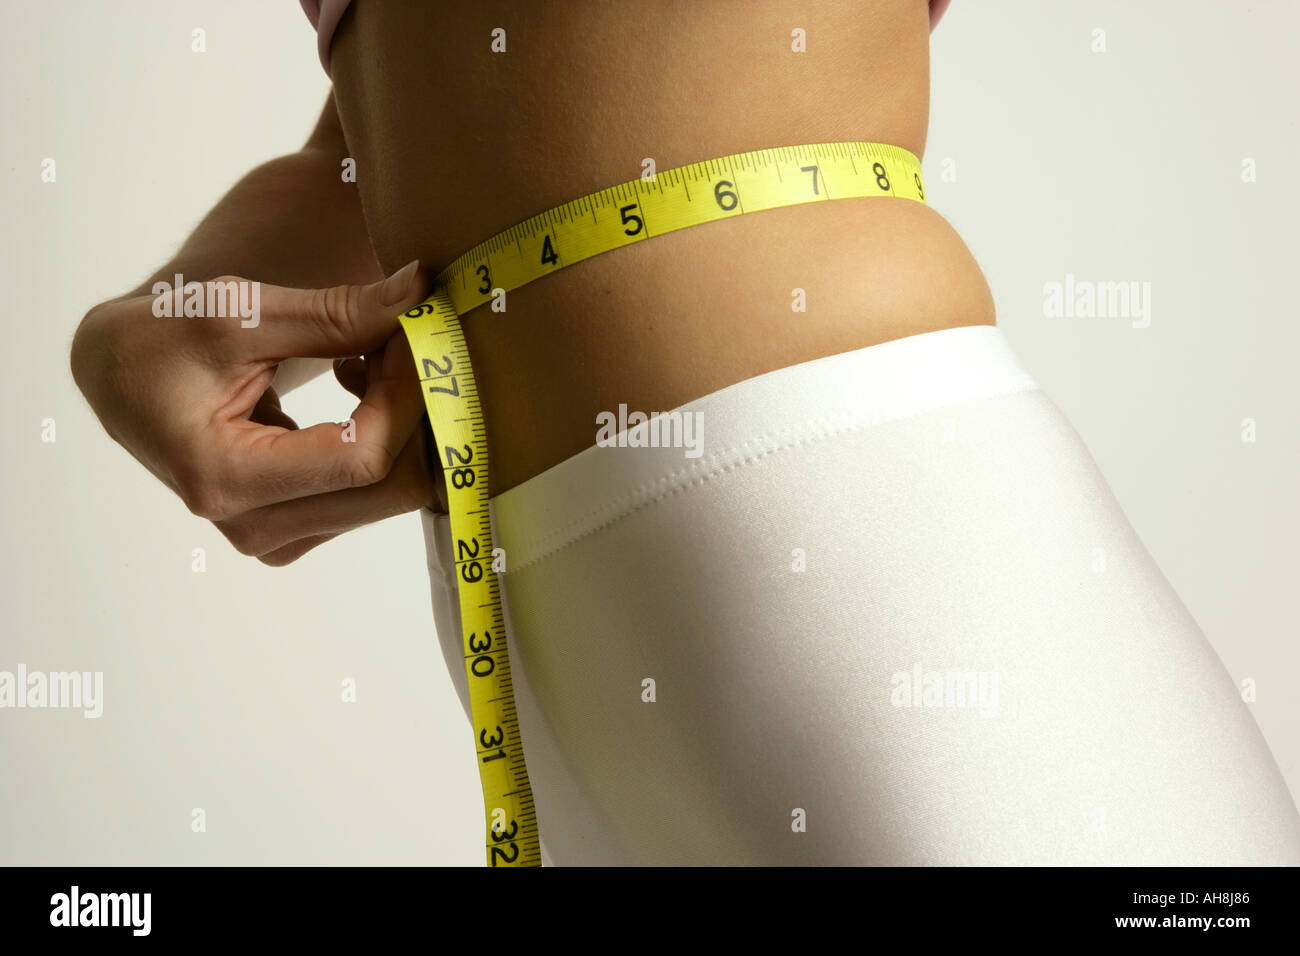 Señorita midiendo su cintura con una cinta métrica amarilla horizontal Foto de stock